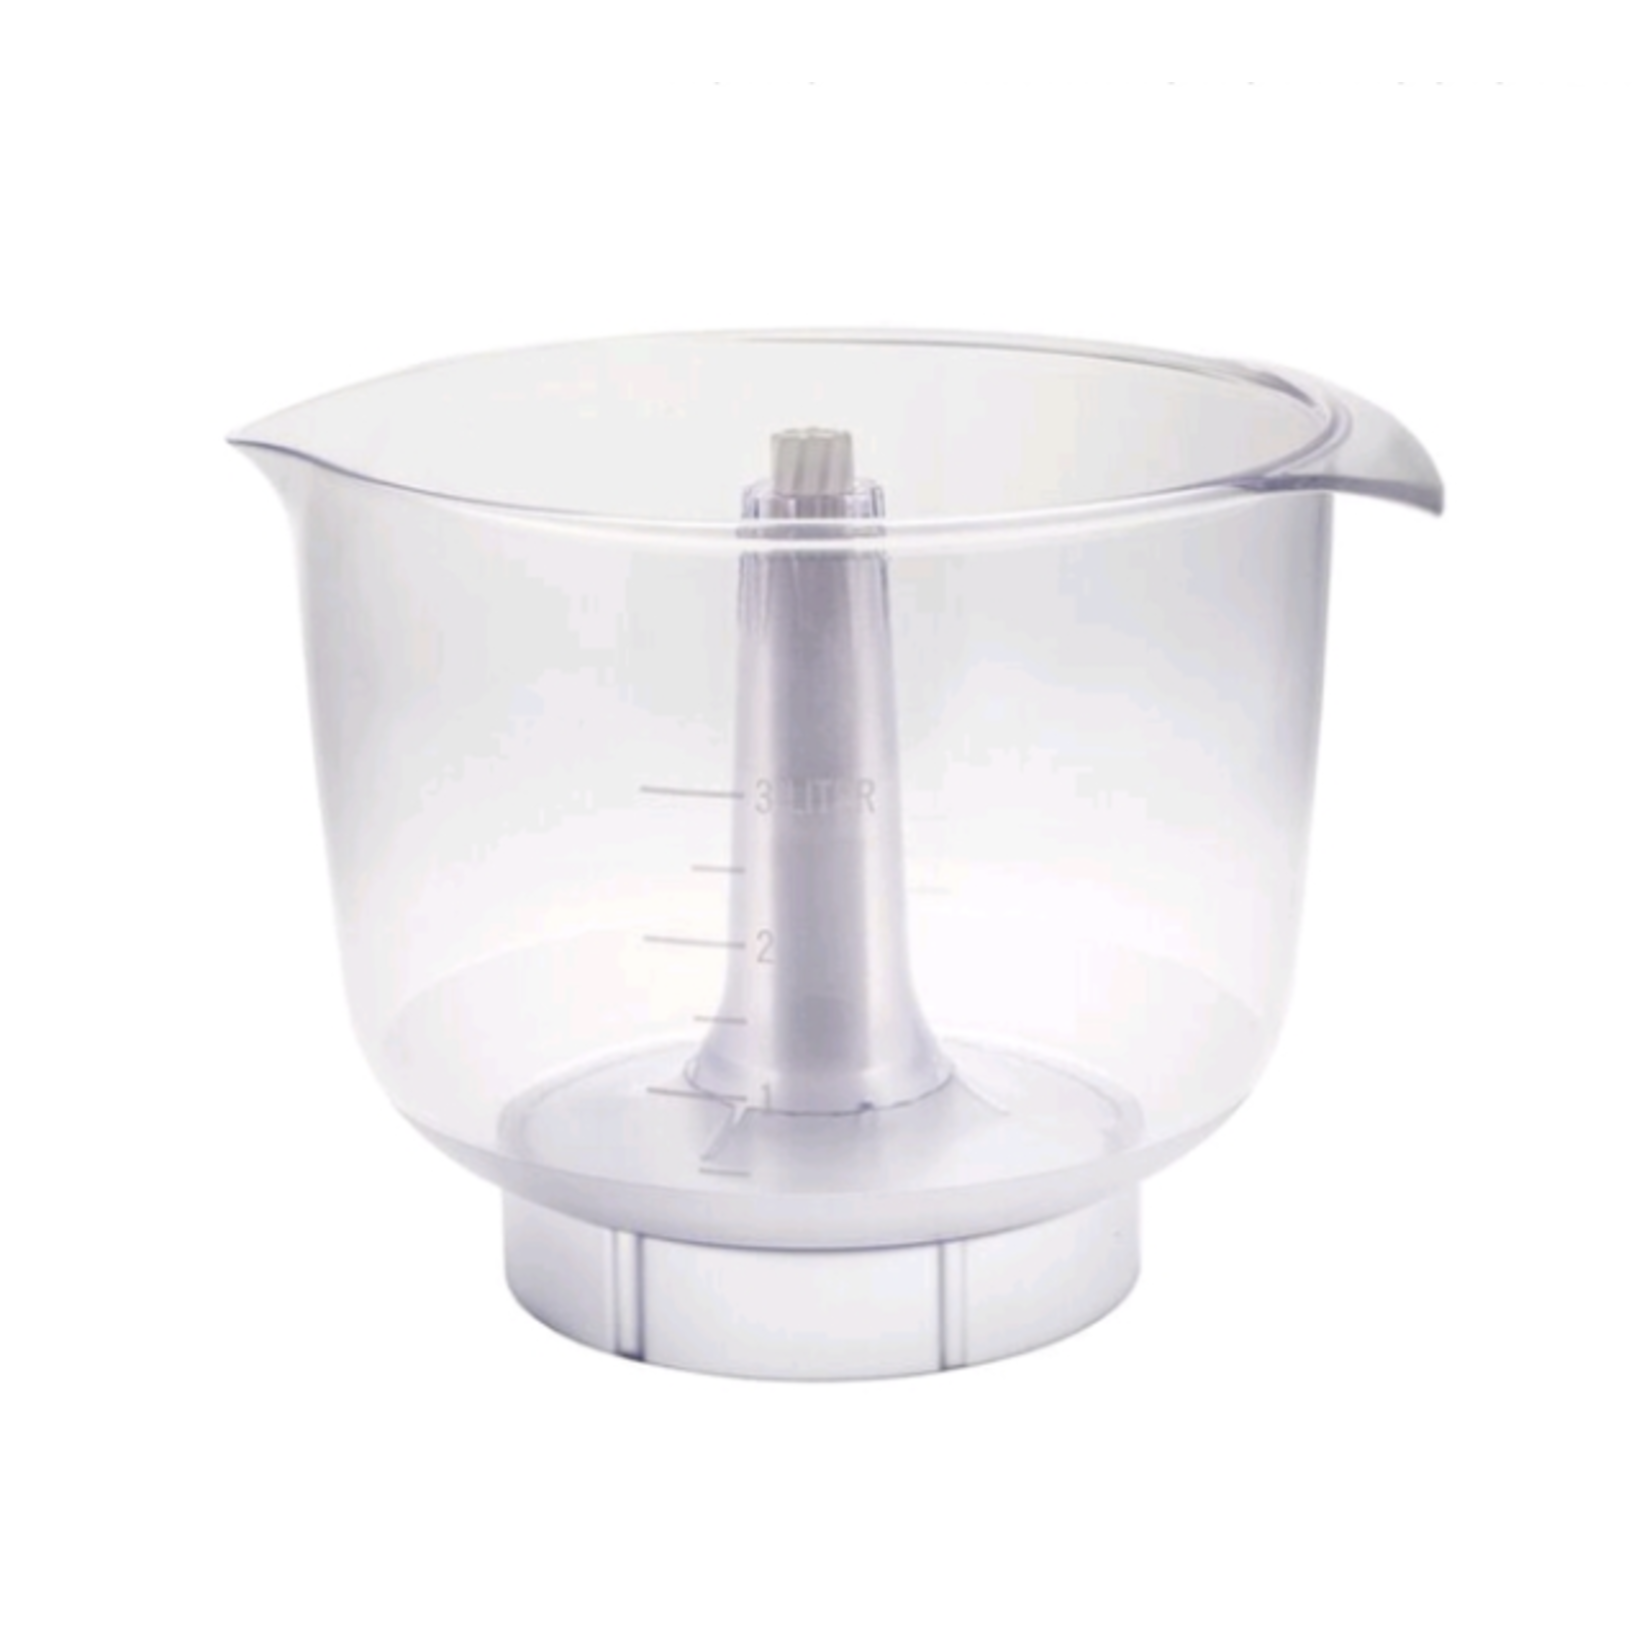 ANKARSRUM ANKARSRUM Clear Plastic Bowl 3.5L